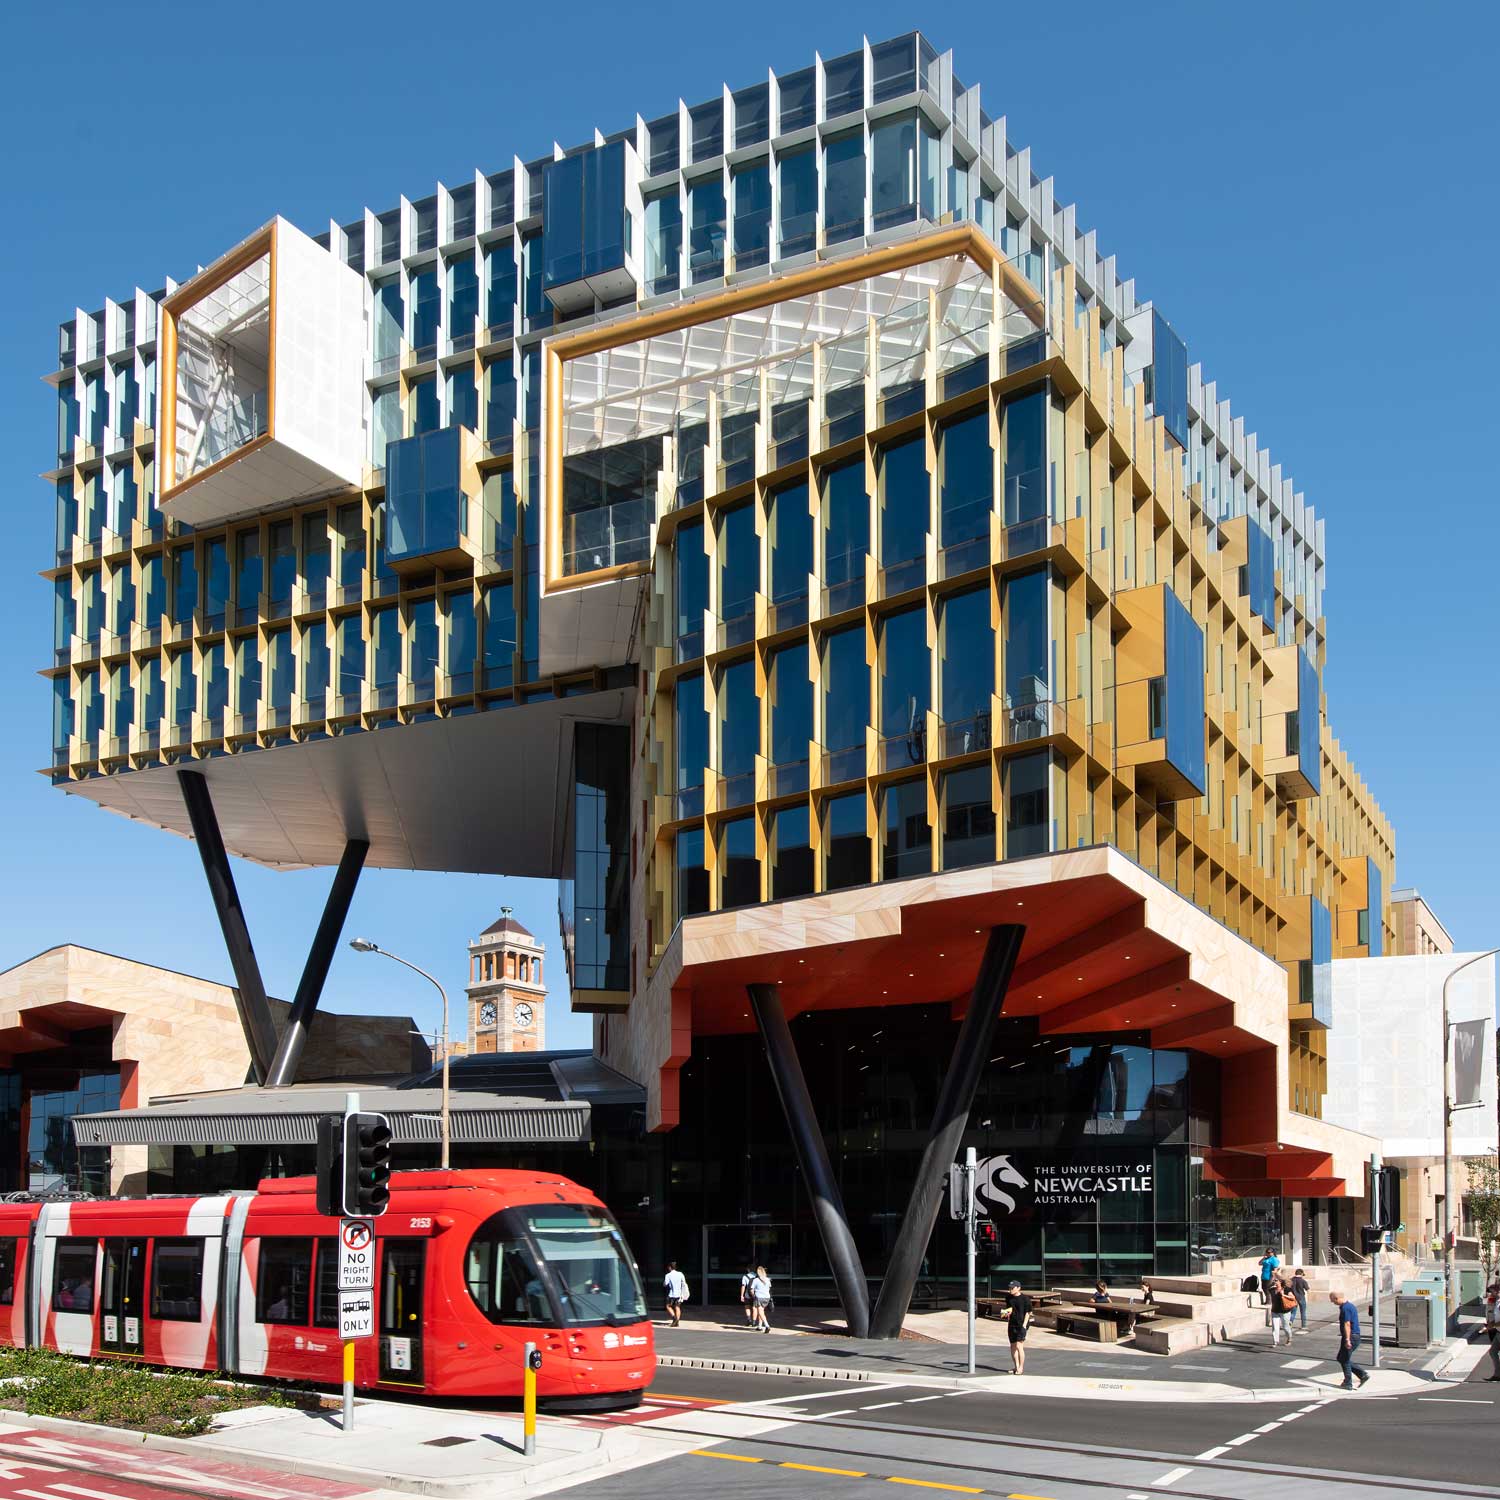 澳大利亚纽卡斯尔大学建校于1965年,是隶属于澳大利亚政府的著名大学